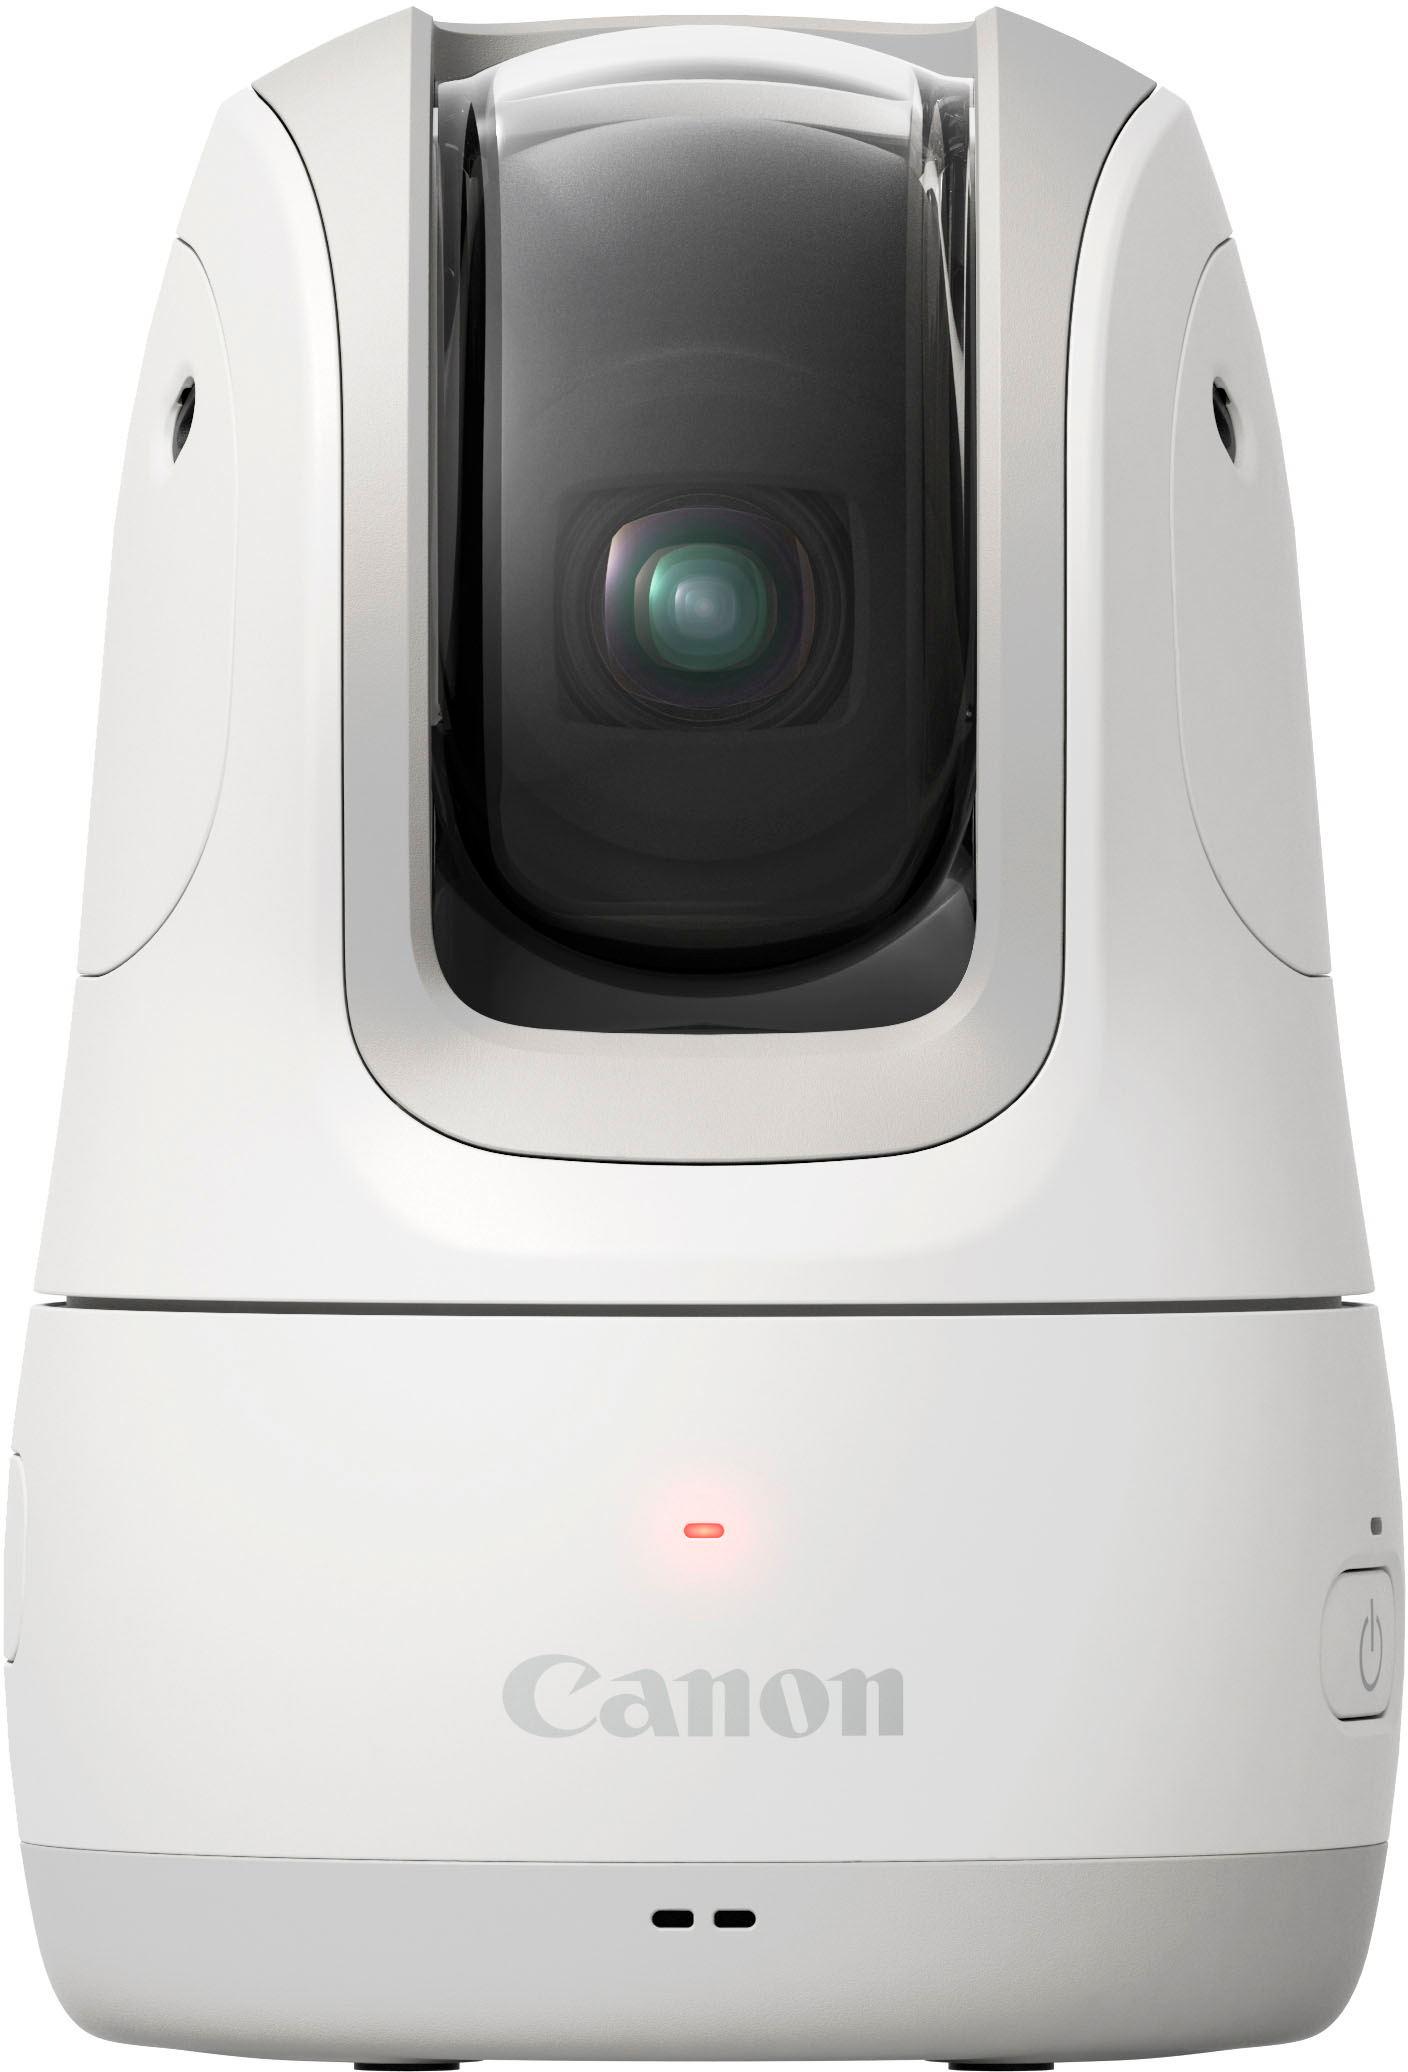 カメラ デジタルカメラ Canon PowerShot Pick Active Tracking PTZ 11.7MP Digital Camera 